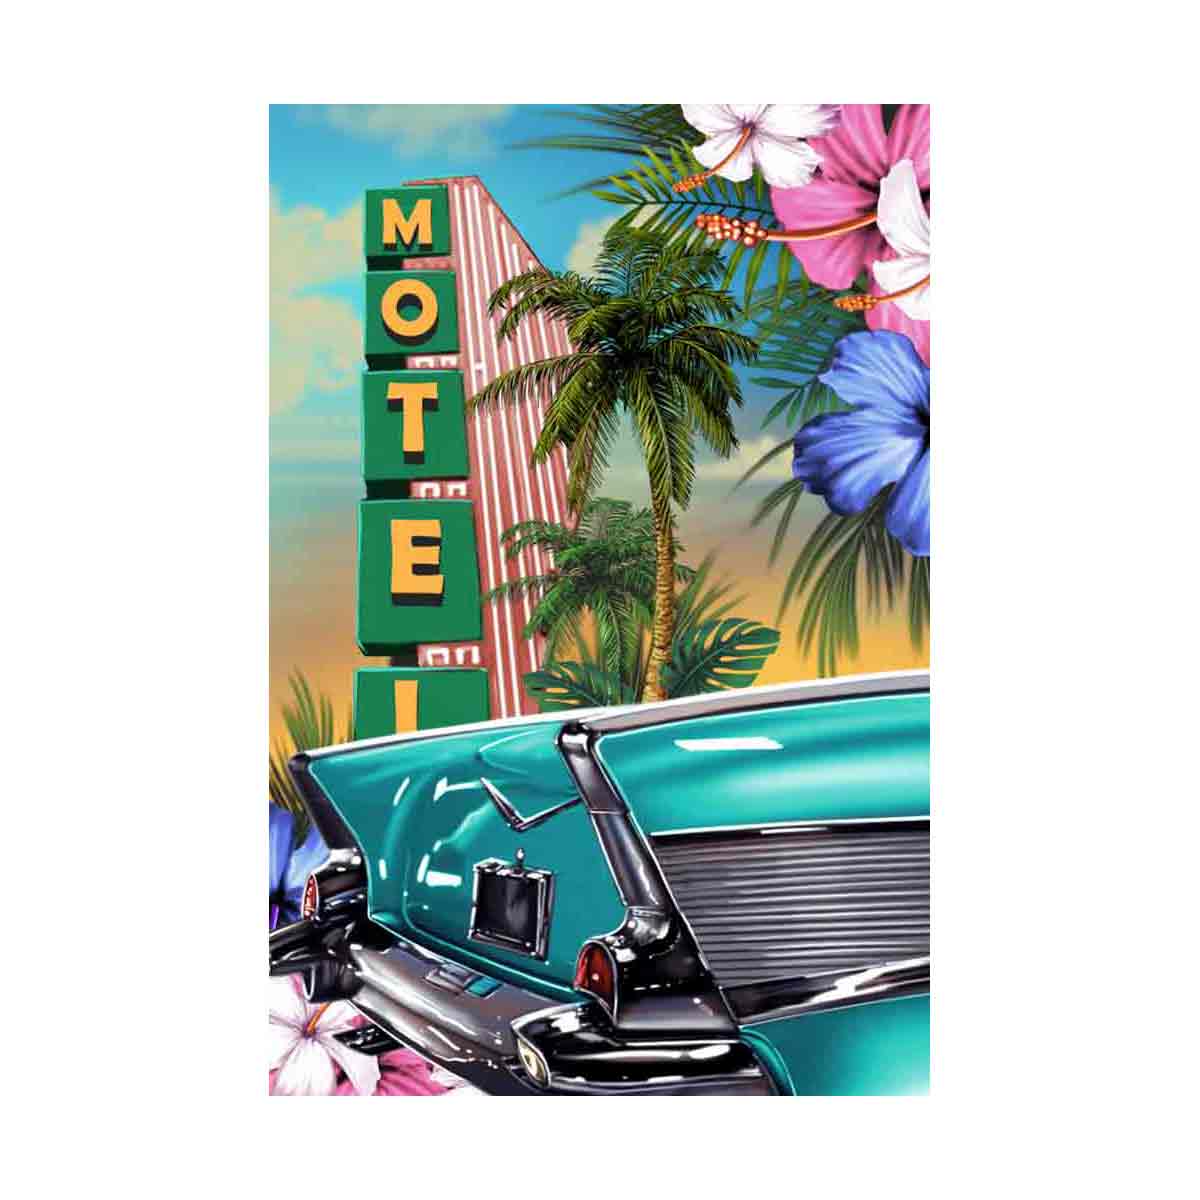 Motel - Art Deco Bel Air Classic